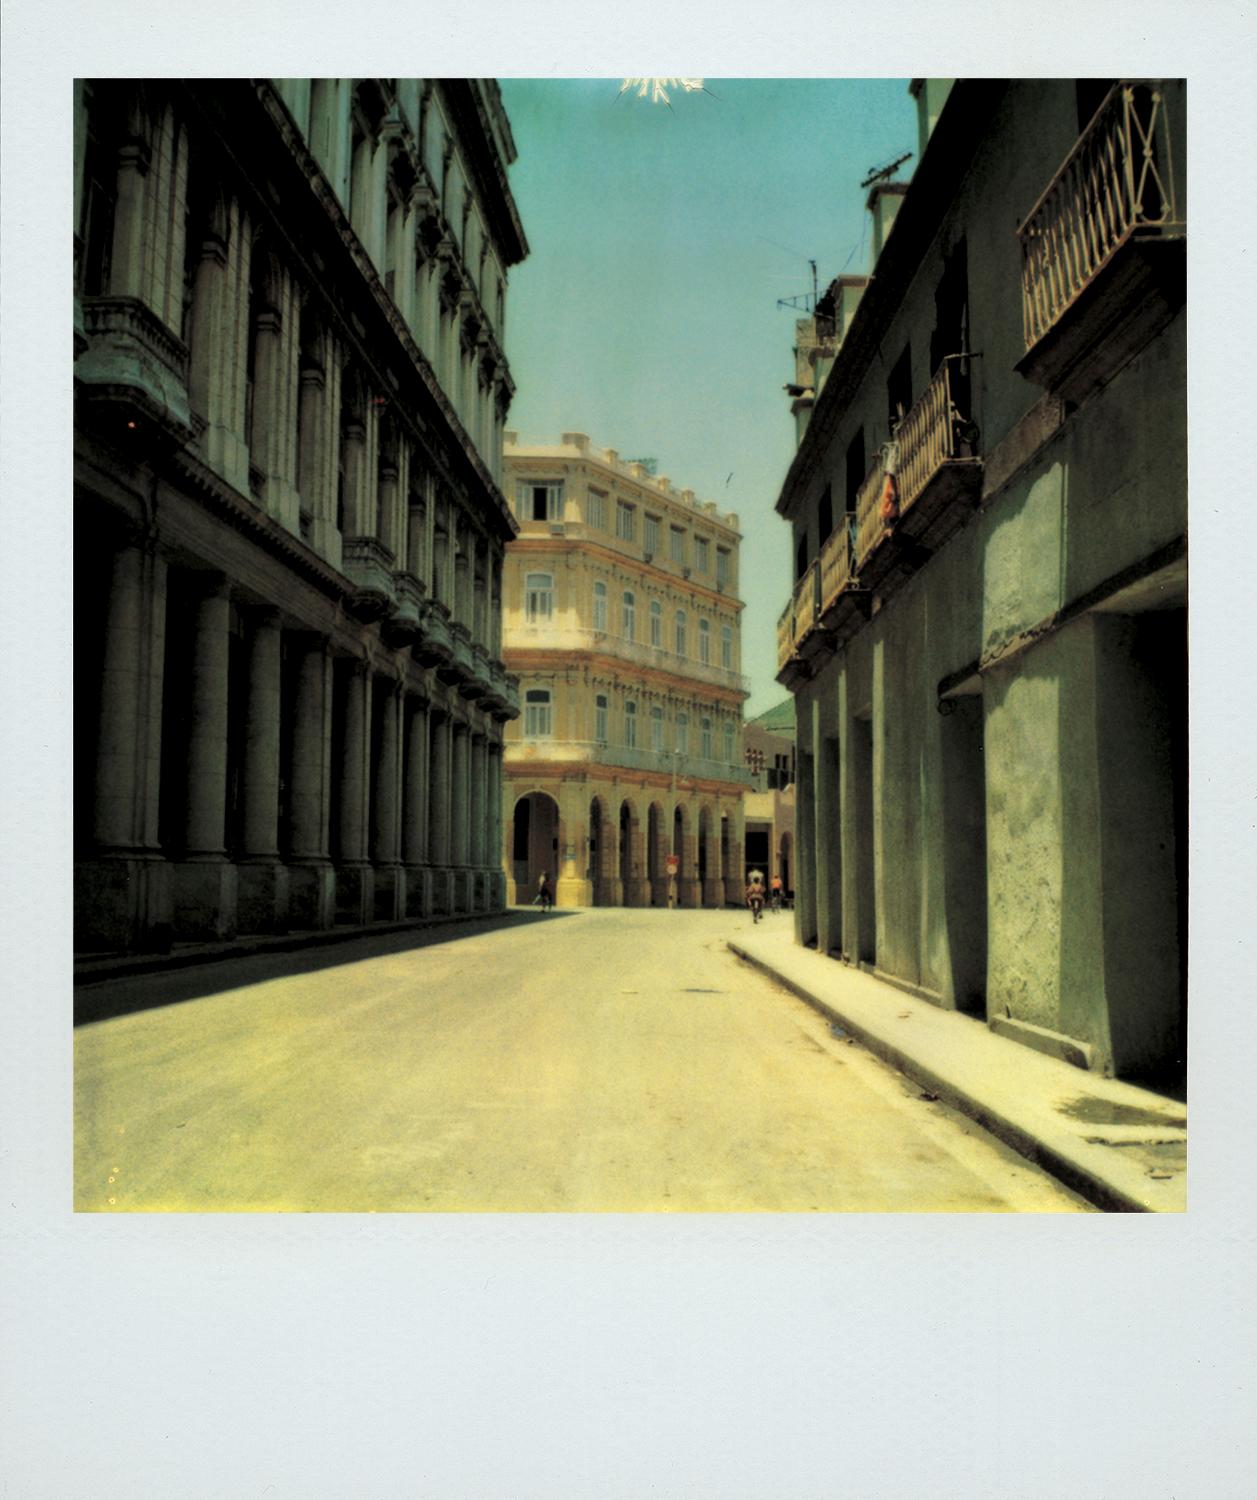 Jose Picayo Color Photograph - "Obispo Street #1", Cuba, 1994